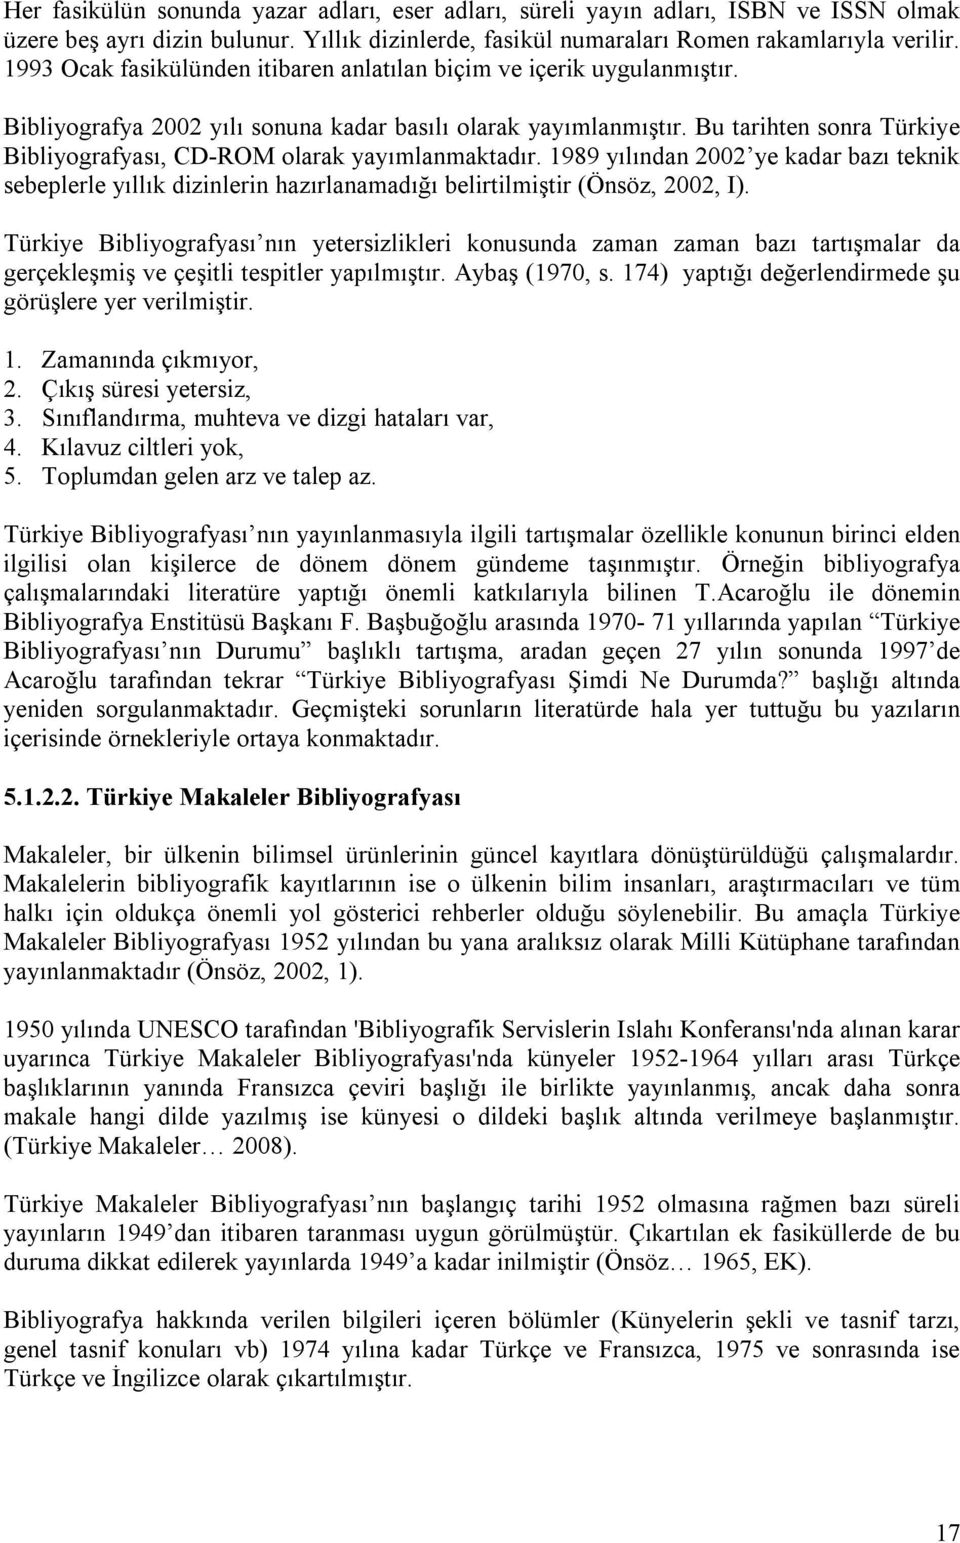 Bu tarihten sonra Türkiye Bibliyografyası, CD-ROM olarak yayımlanmaktadır. 1989 yılından 2002 ye kadar bazı teknik sebeplerle yıllık dizinlerin hazırlanamadığı belirtilmiştir (Önsöz, 2002, I).